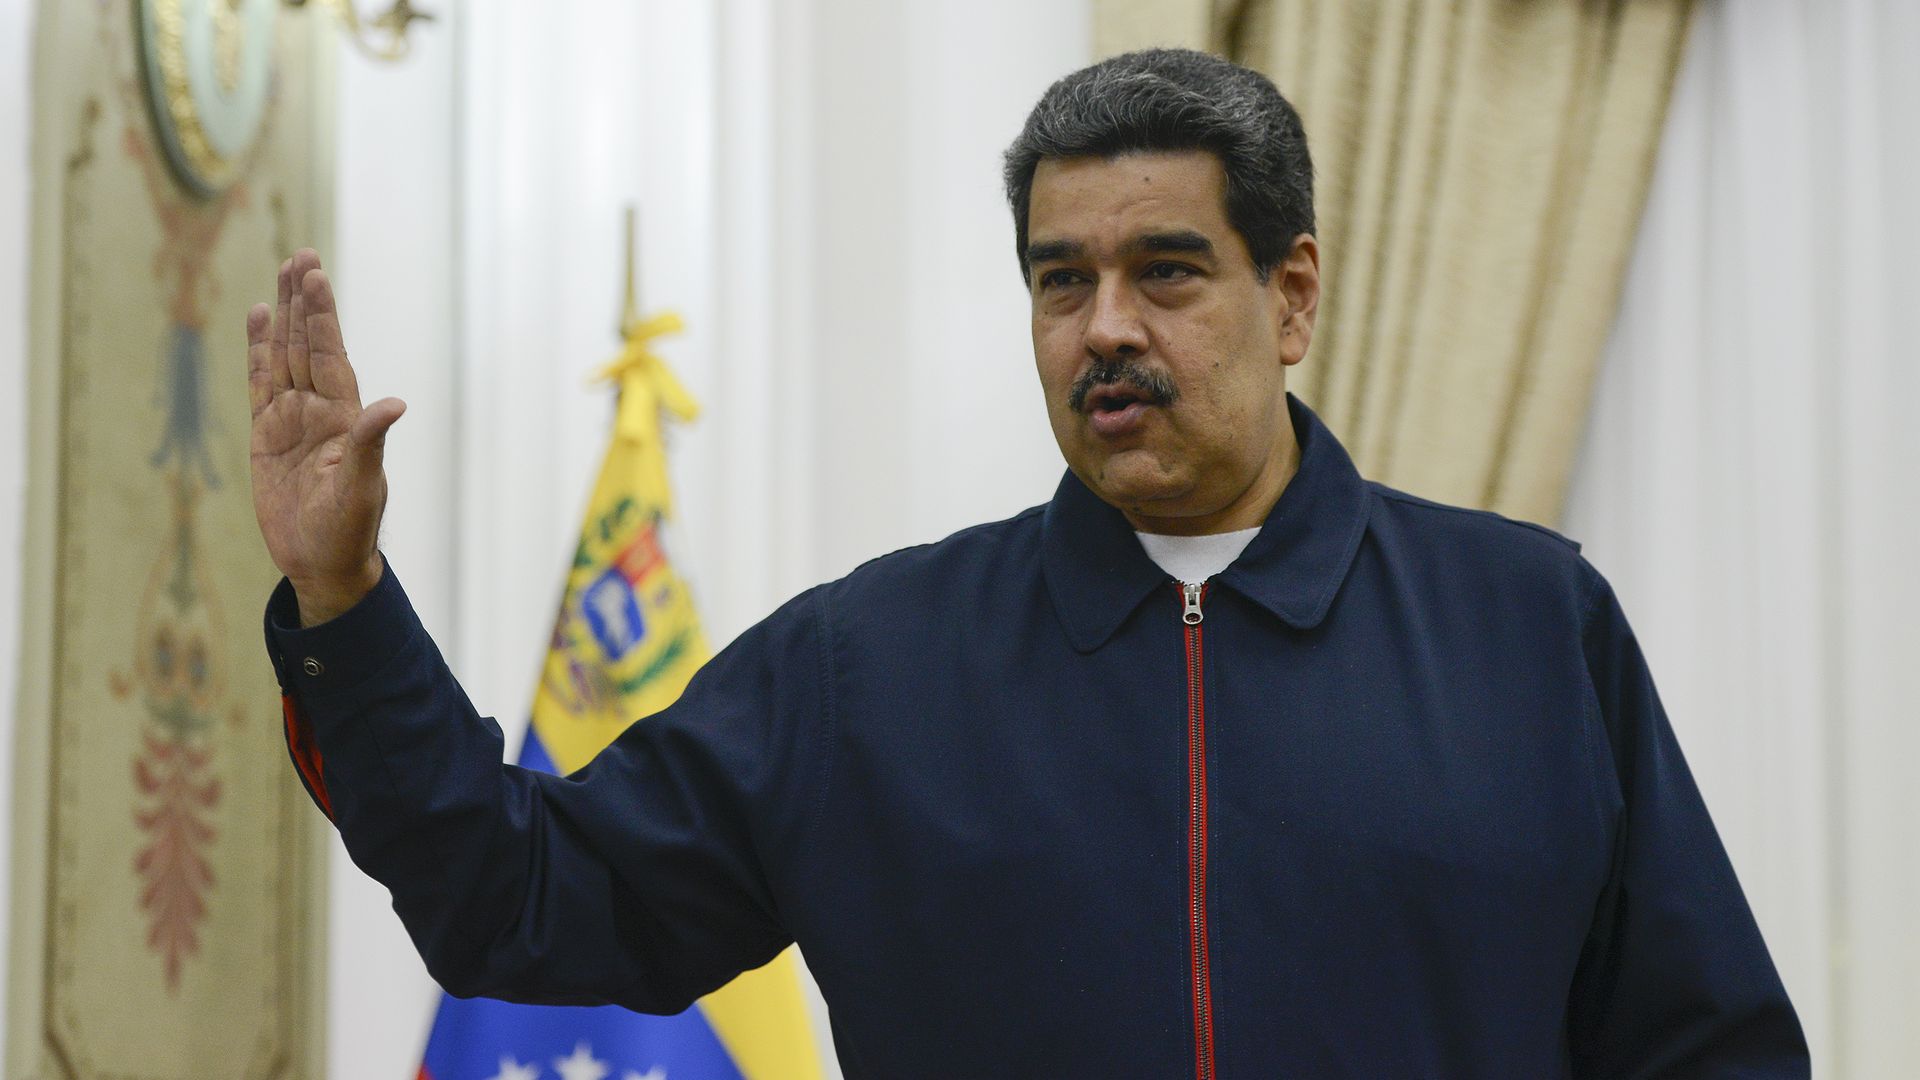 Nicolas Maduro (R) President of Venezuela speaks prior a meeting with EU special adviser for Venezuela